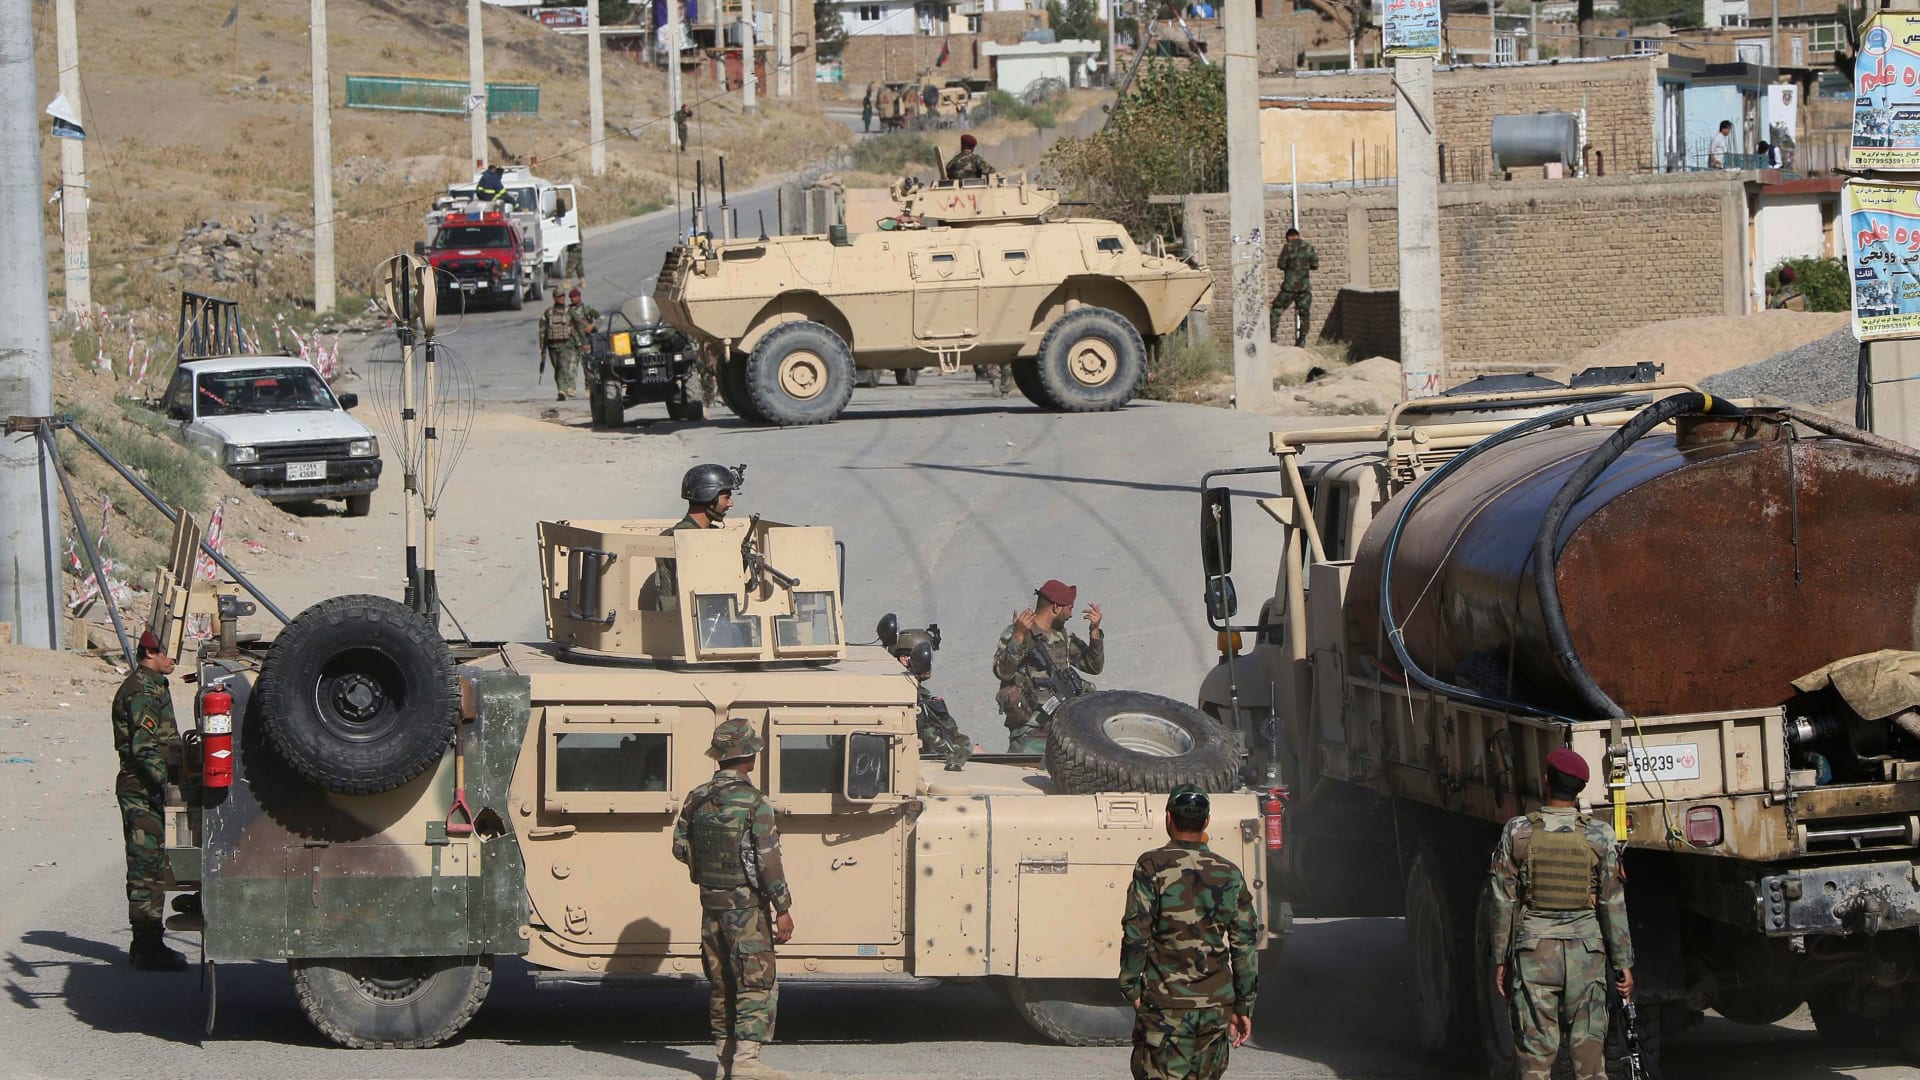 واشنطن بوست: المكافآت الروسية لمقاتلي طالبان أدت إلى مقتل جنود أمريكيين بأفغانستان